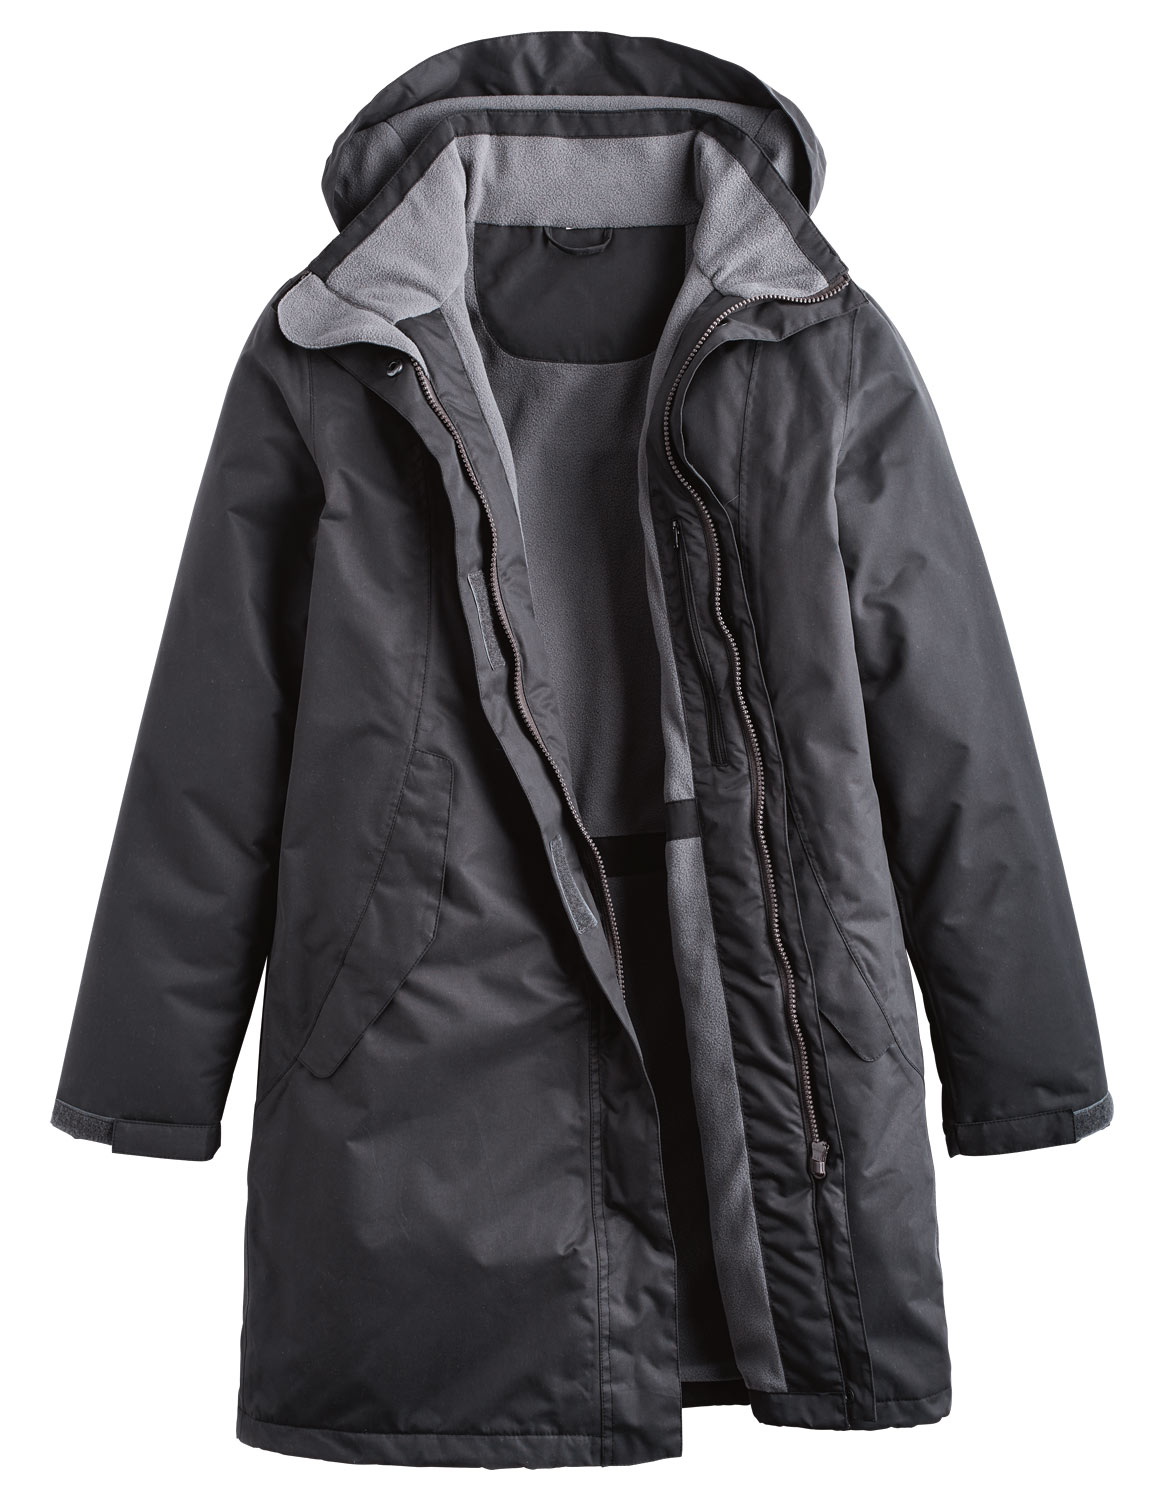 Ladies Waterproof And Breathable Jacket | eBay